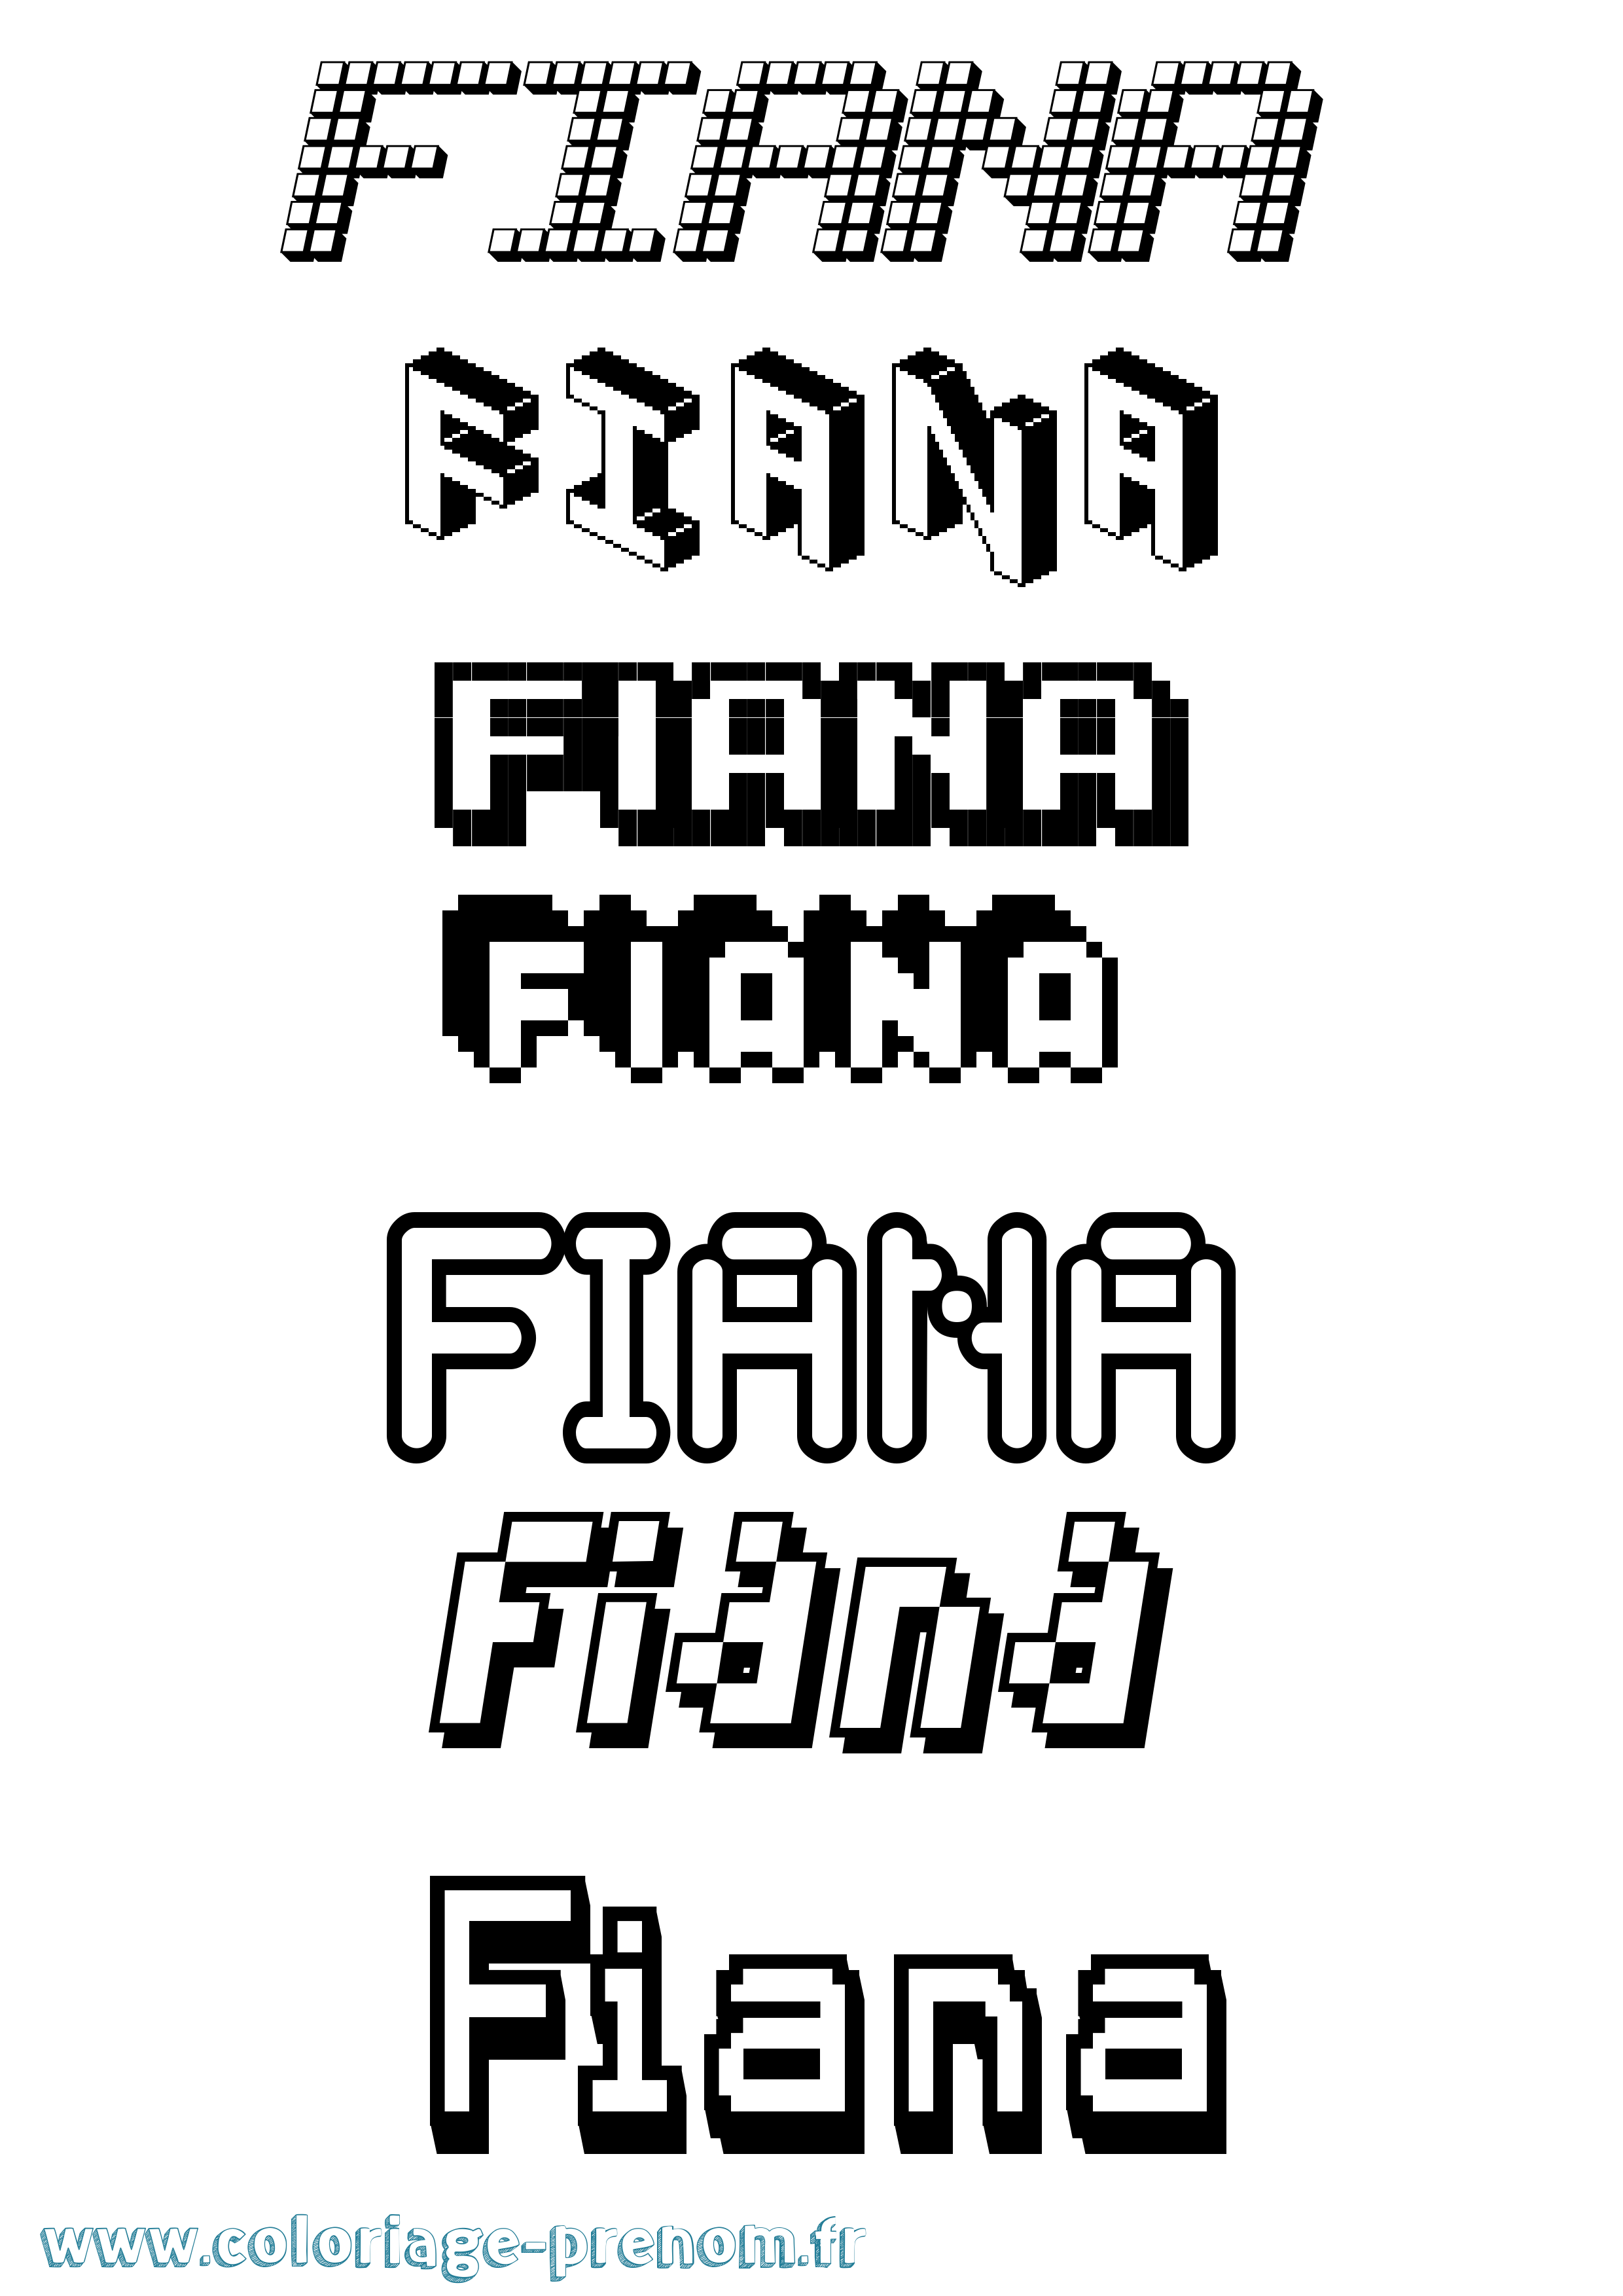 Coloriage prénom Fiana Pixel